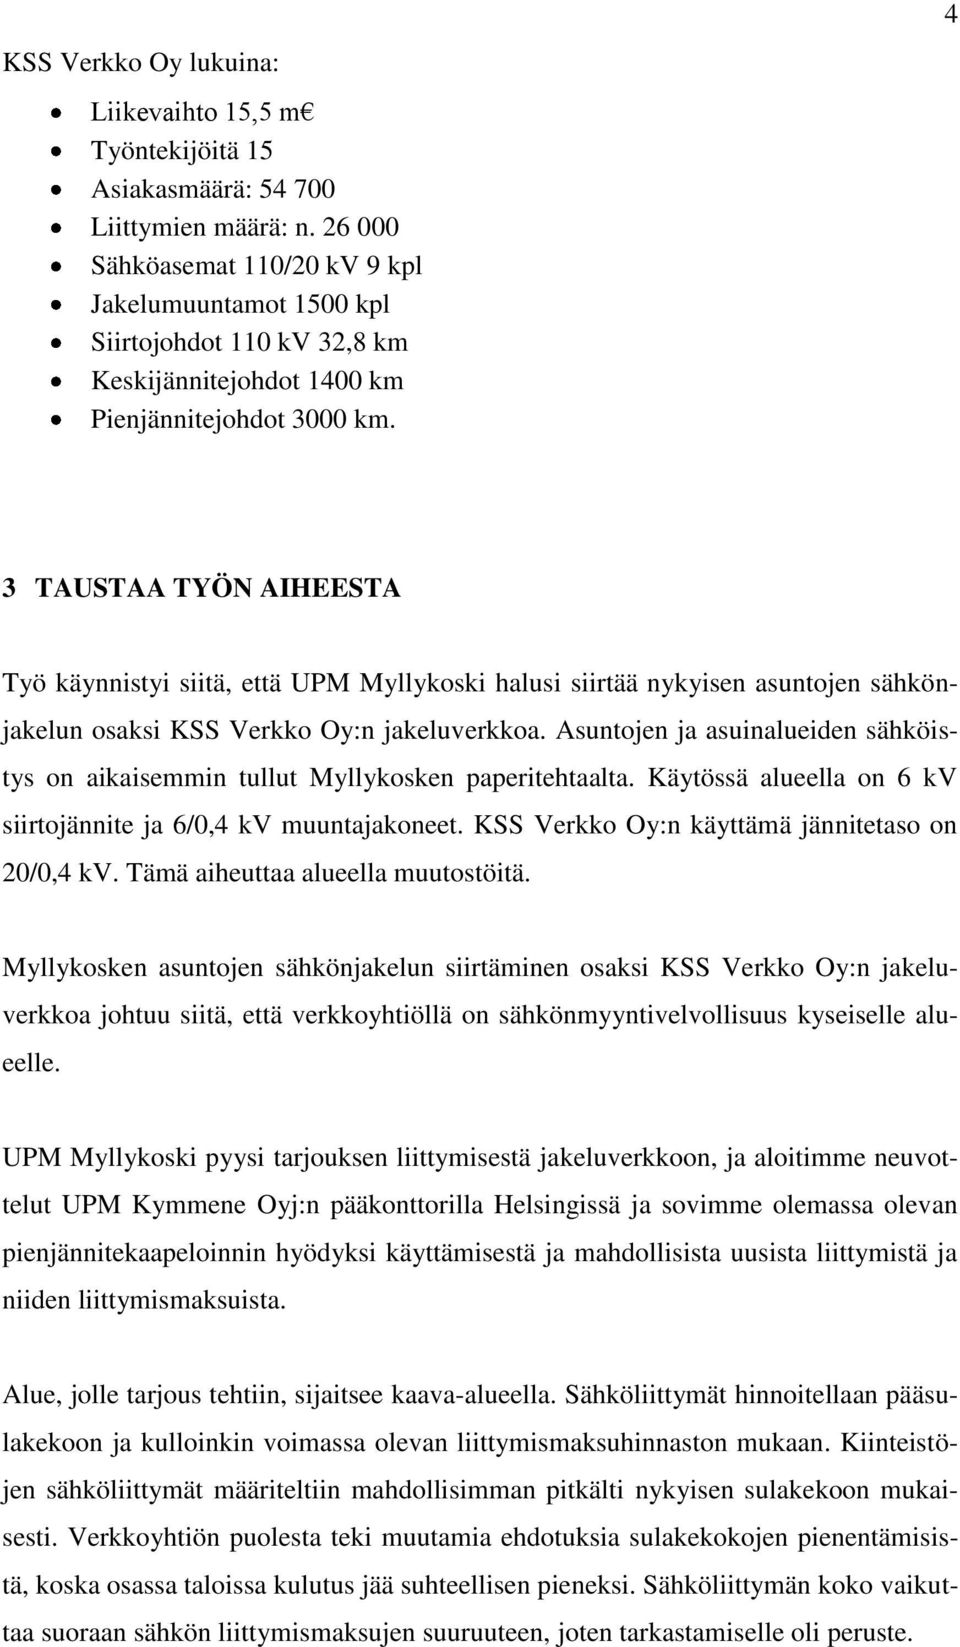 4 3 TAUSTAA TYÖN AIHEESTA Työ käynnistyi siitä, että UPM Myllykoski halusi siirtää nykyisen asuntojen sähkönjakelun osaksi KSS Verkko Oy:n jakeluverkkoa.